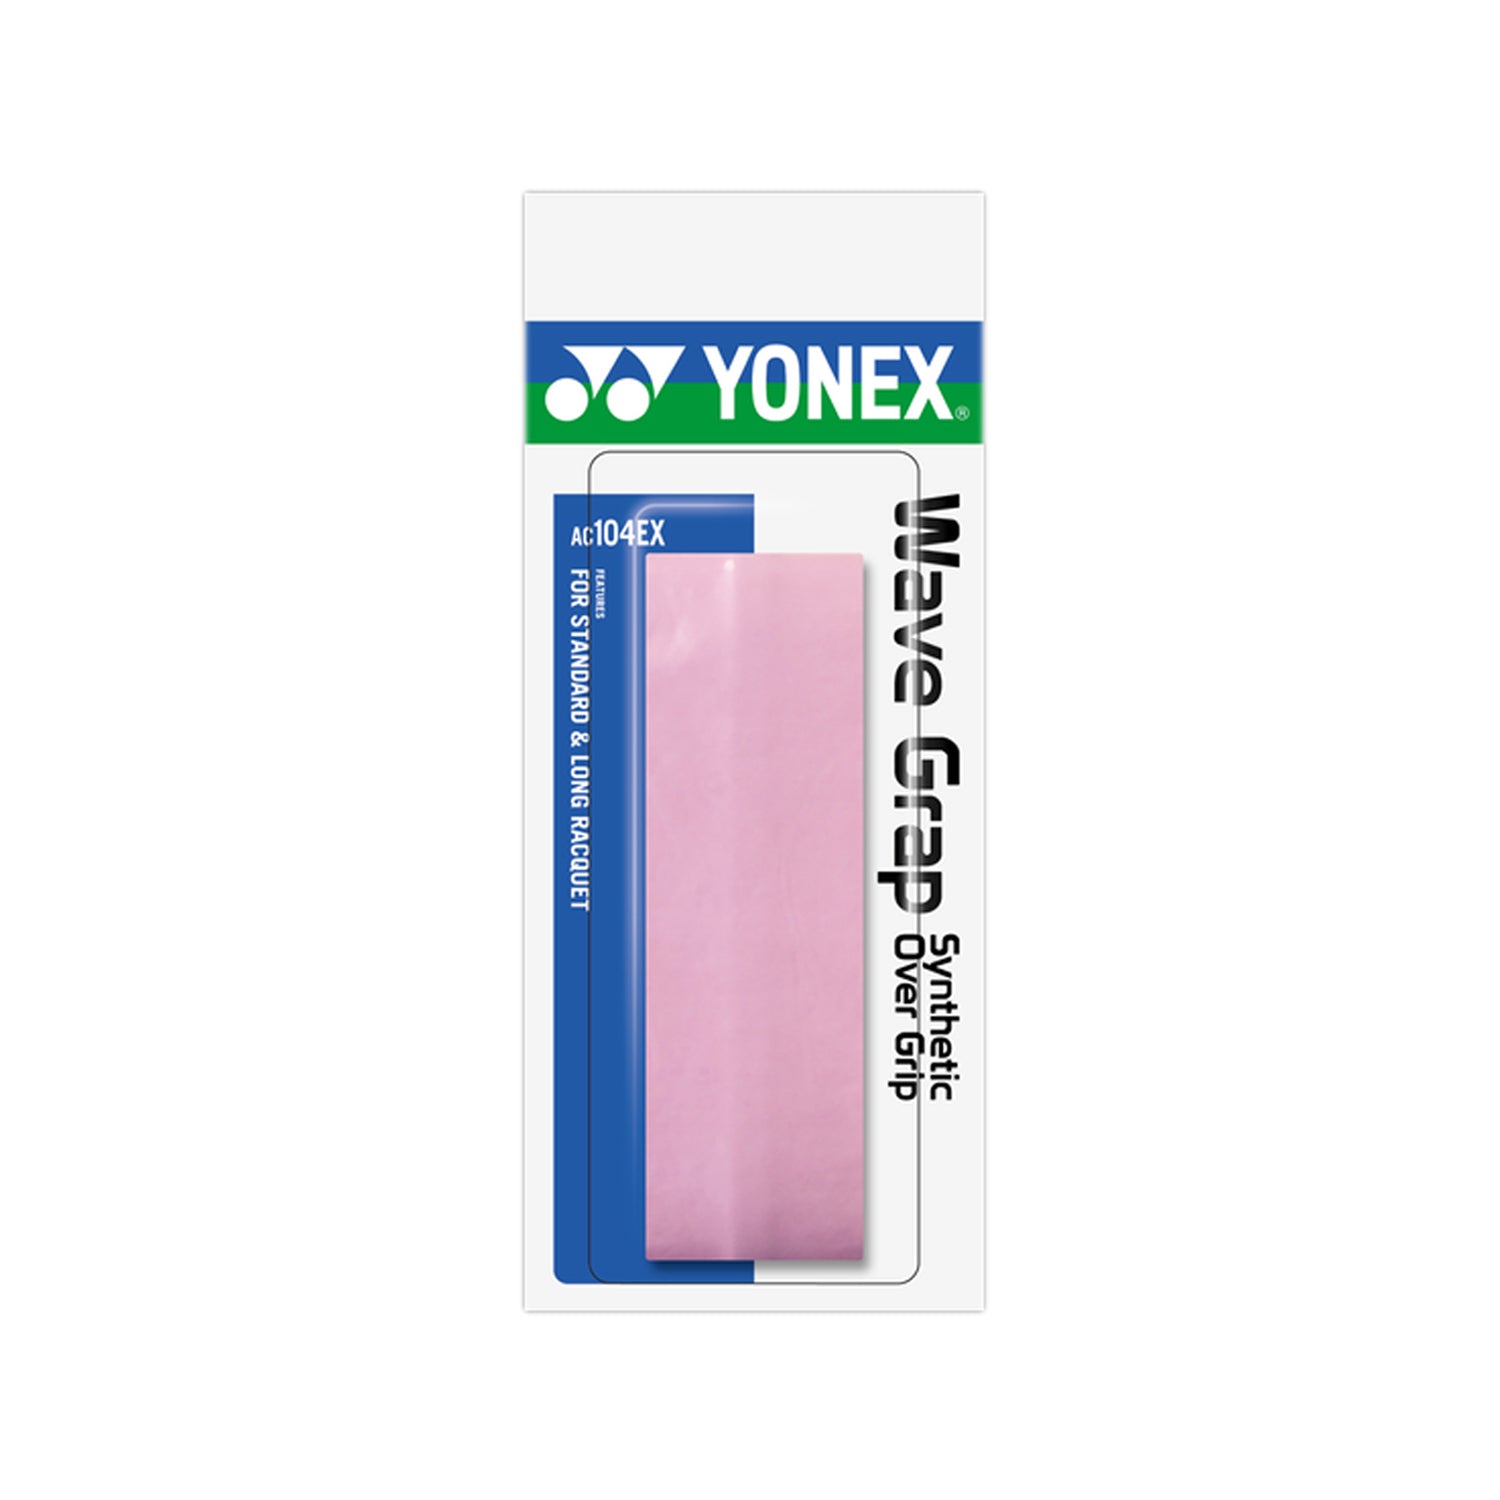 Yonex AC 104 EX Wave Grap Badminton Grip Tape